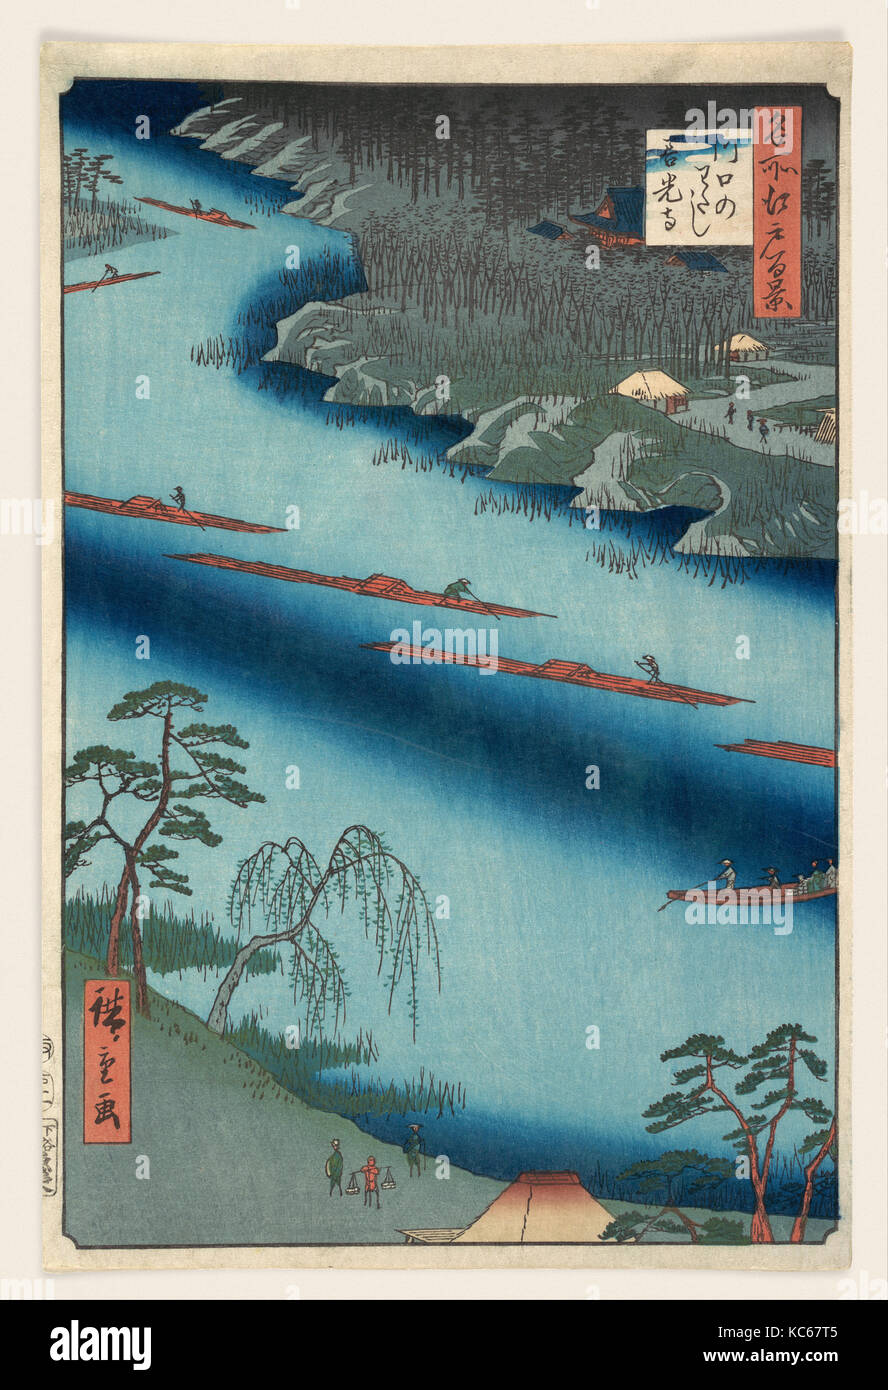 名所江戸百景　川口のわたし善光寺, Kawaguchi, Utagawa Hiroshige, 1857 Stock Photo